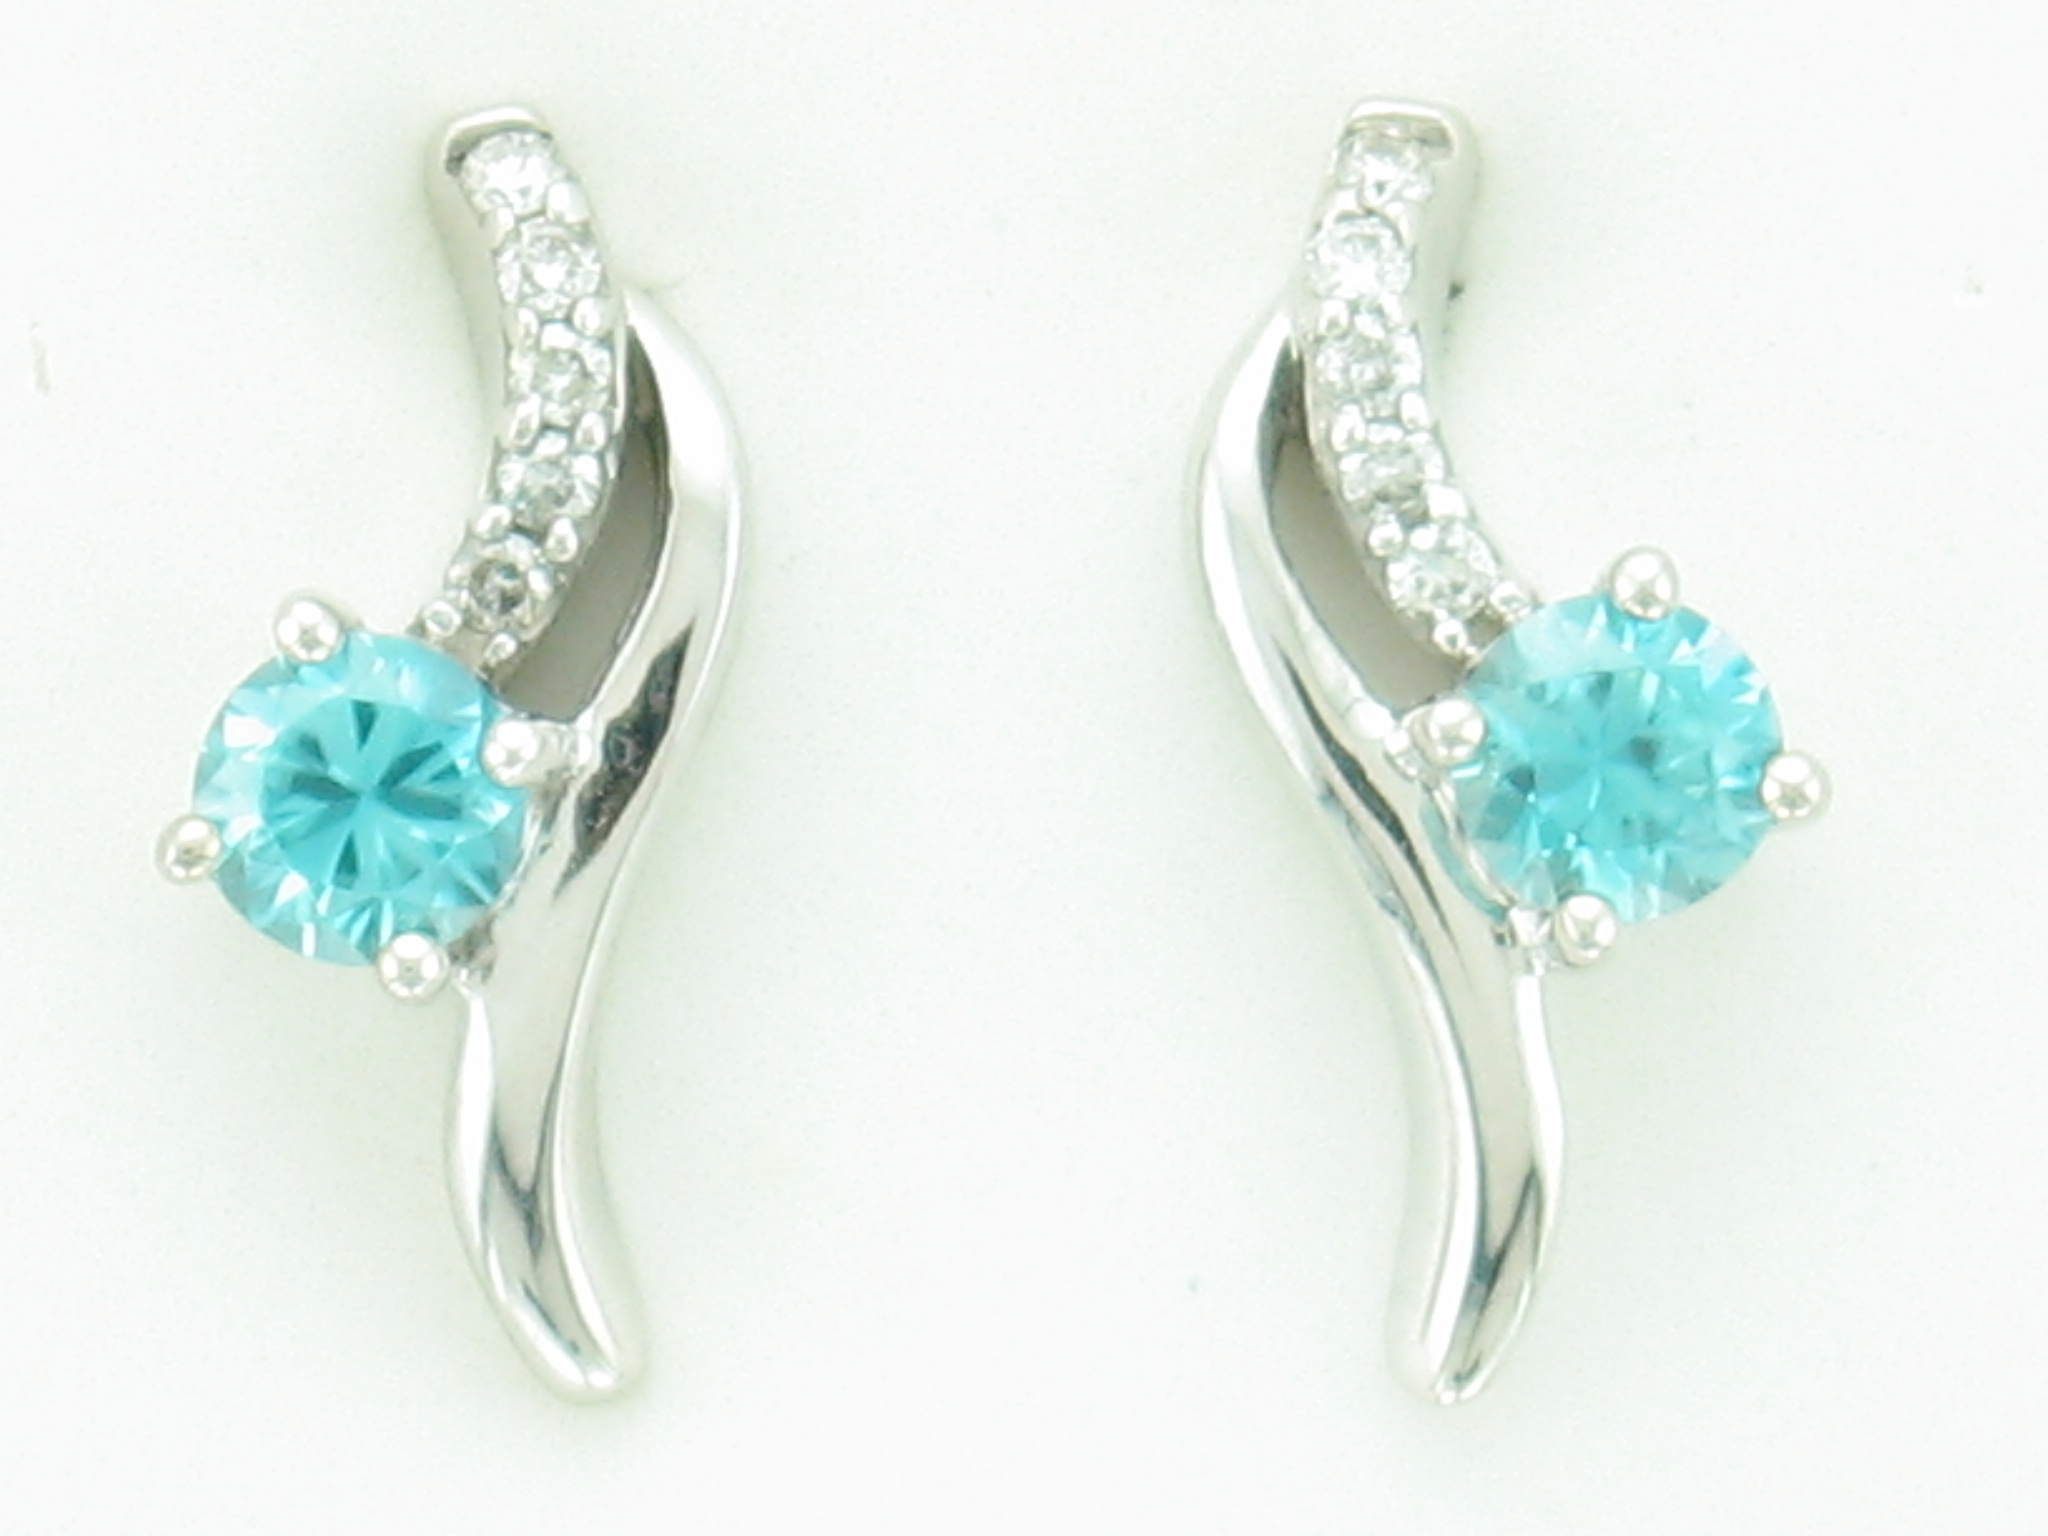 Earrings by Idaho Opal & Gem Corporation